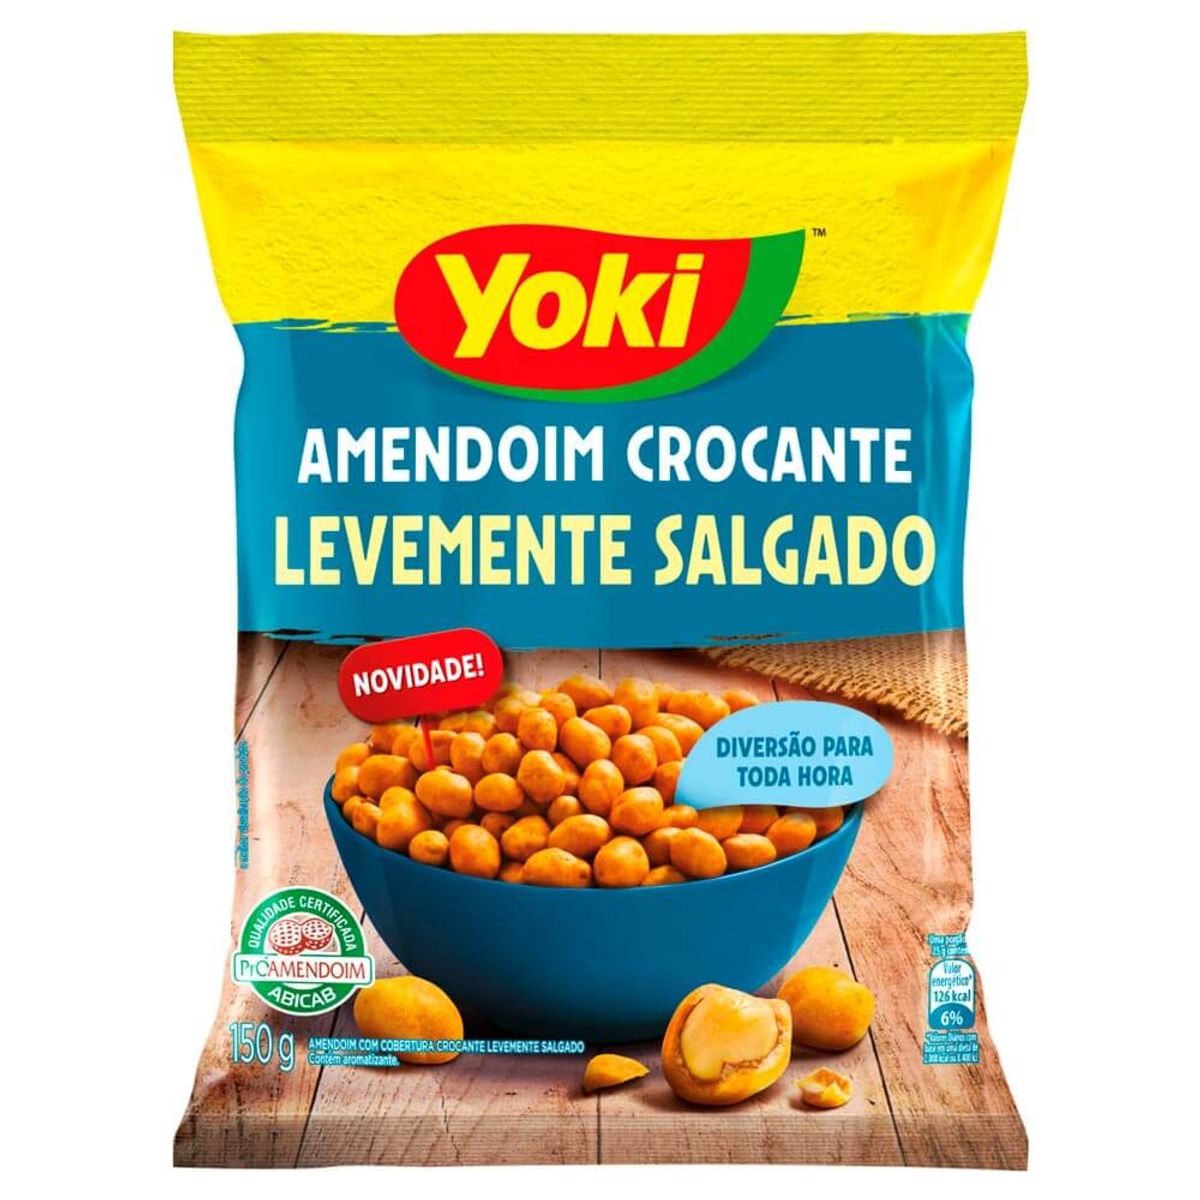 Amendoim Crocante Yoki Levemente Salgado 150g